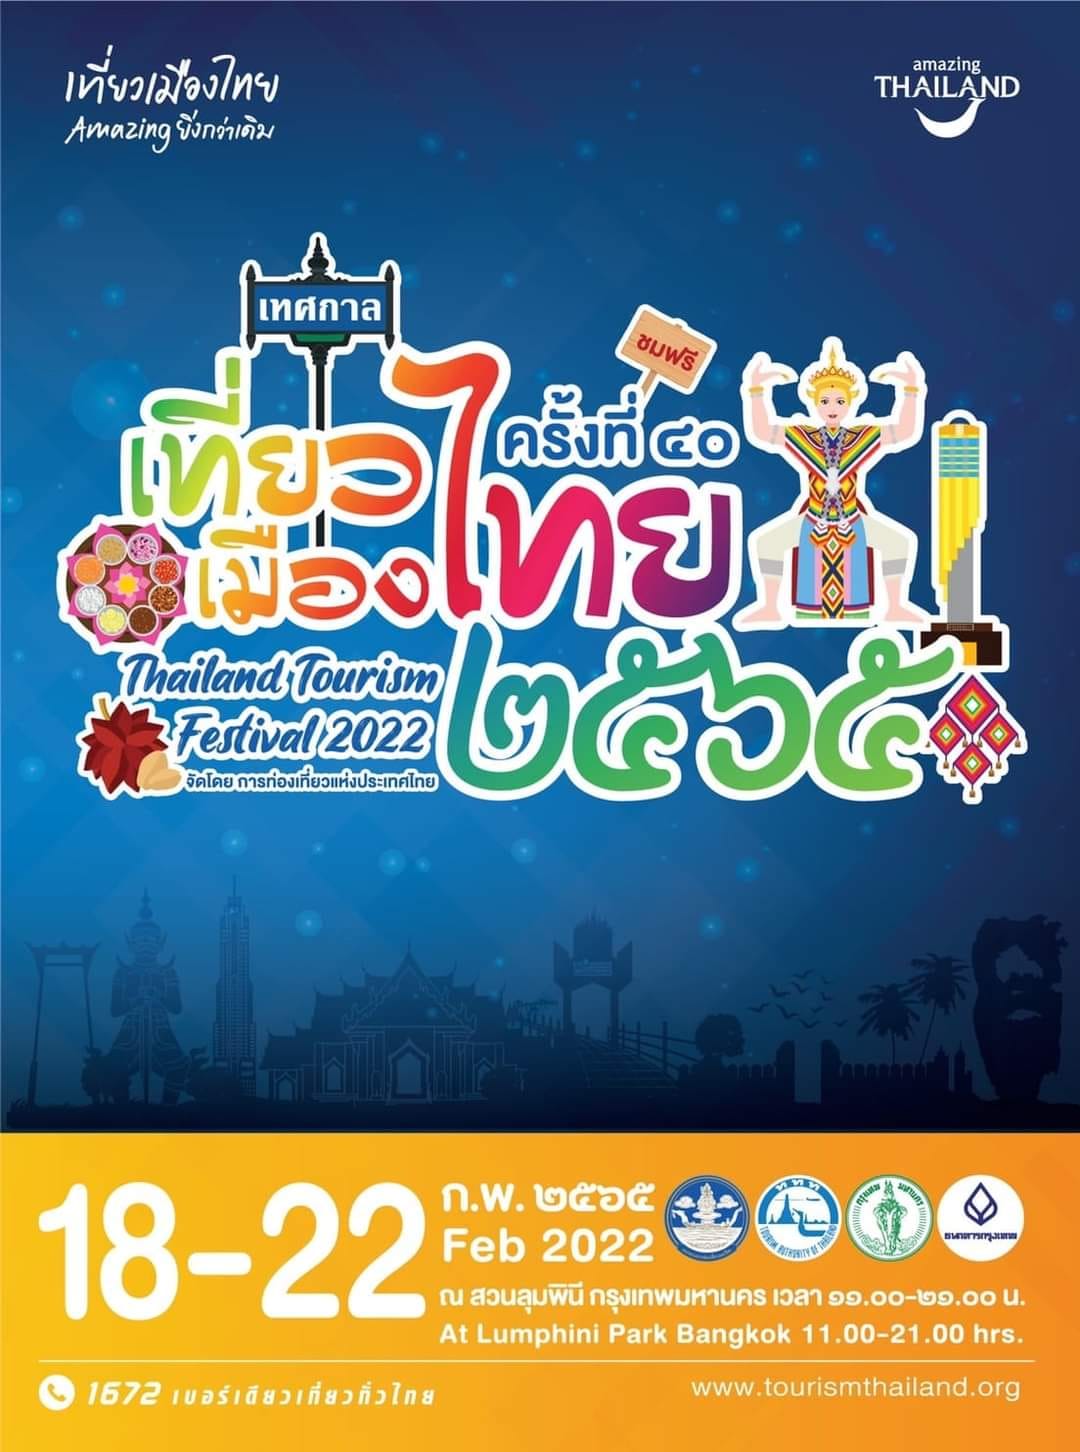 กลับมาอีกครั้งงานเทศกาลเที่ยวเมืองไทยประจำปี 2565 ครั้งที่ 40 วันที่ 18-22 กุมภาพันธ์นี้ ณ สวนลุมพินี 